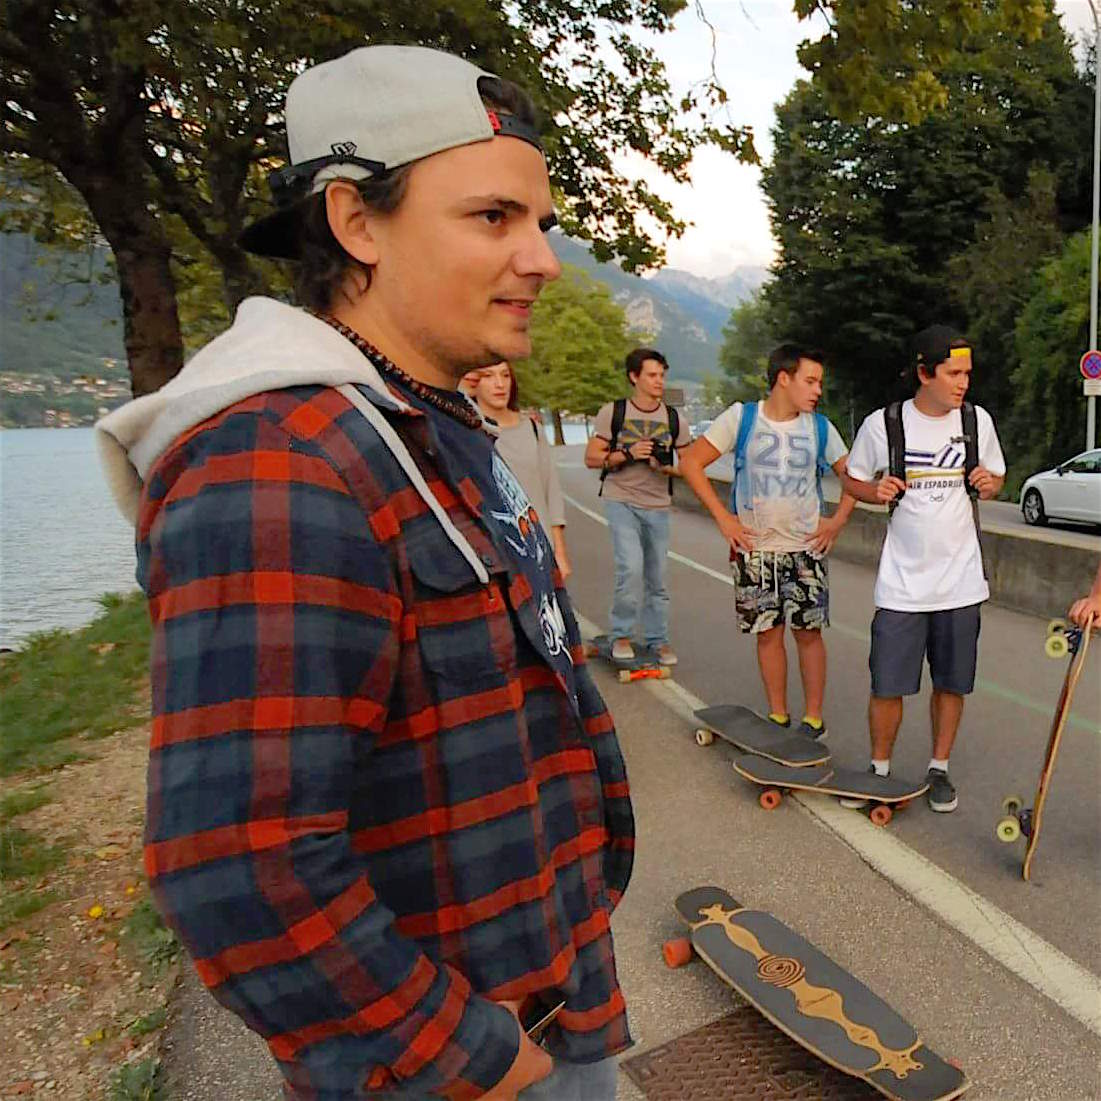 Fabien Porret de Woodskateboards, glisse sur la tendance des Skates fabrication artisanale et locale